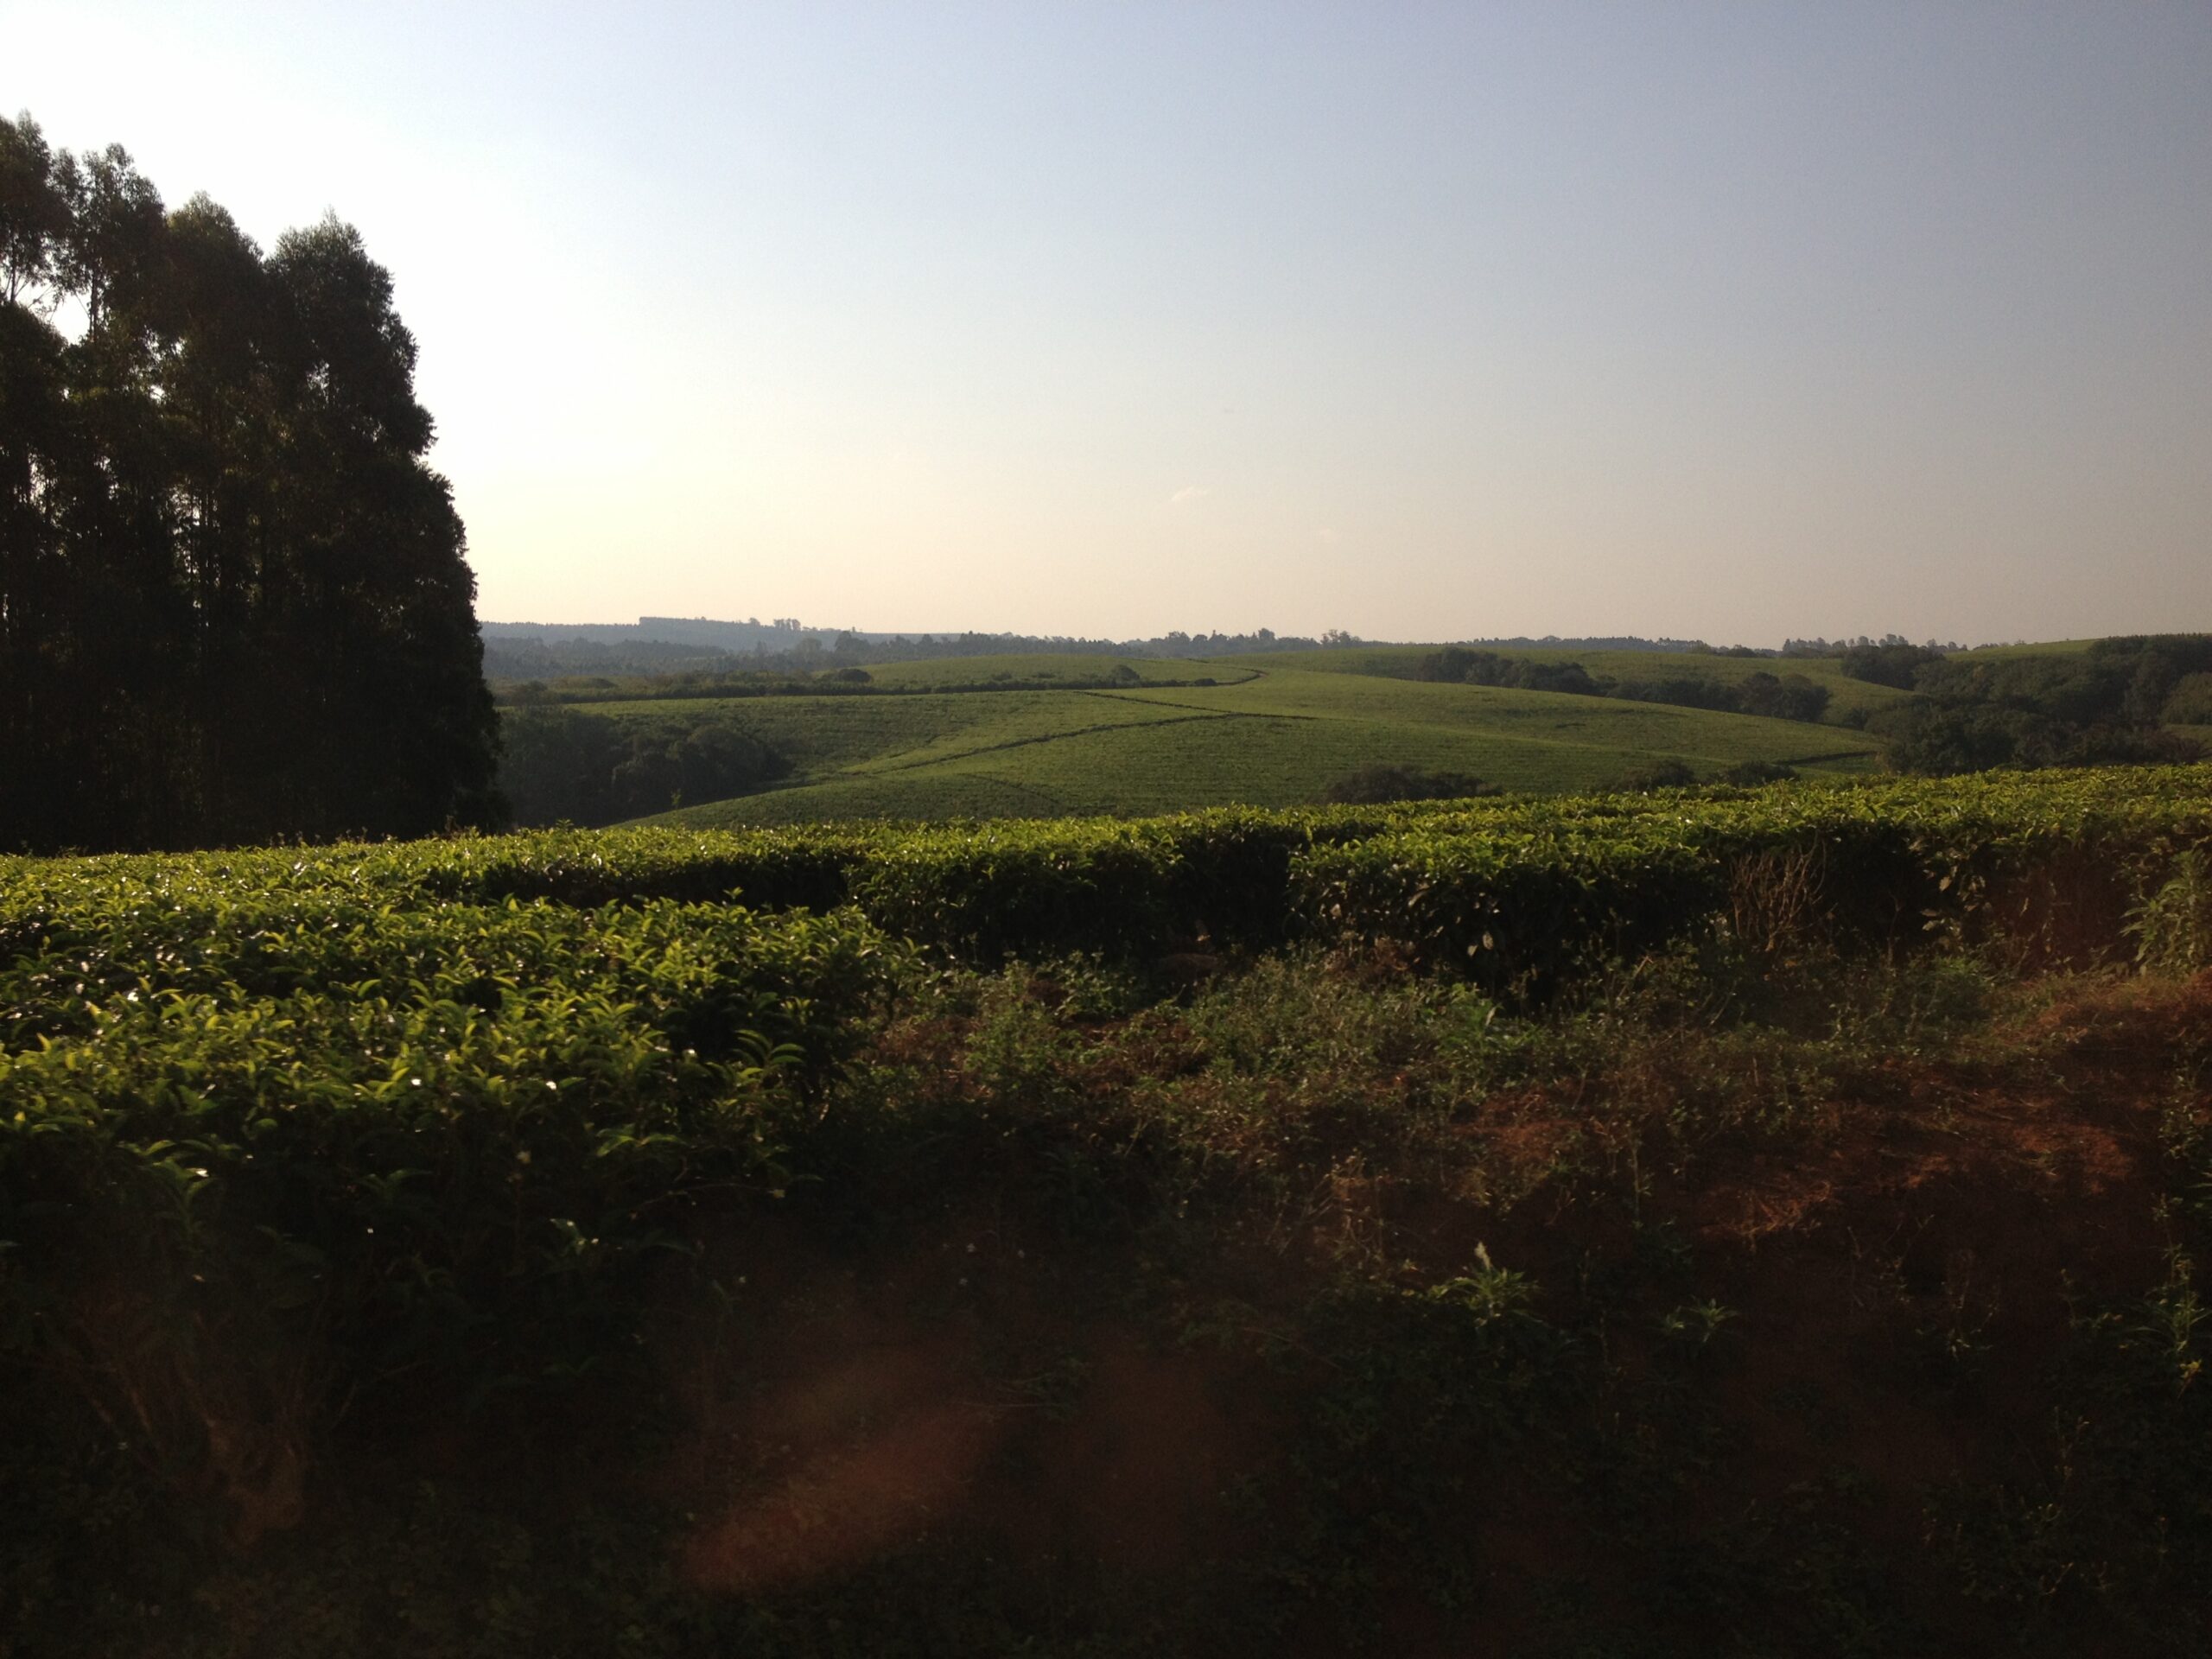 A tea farm sprawling land